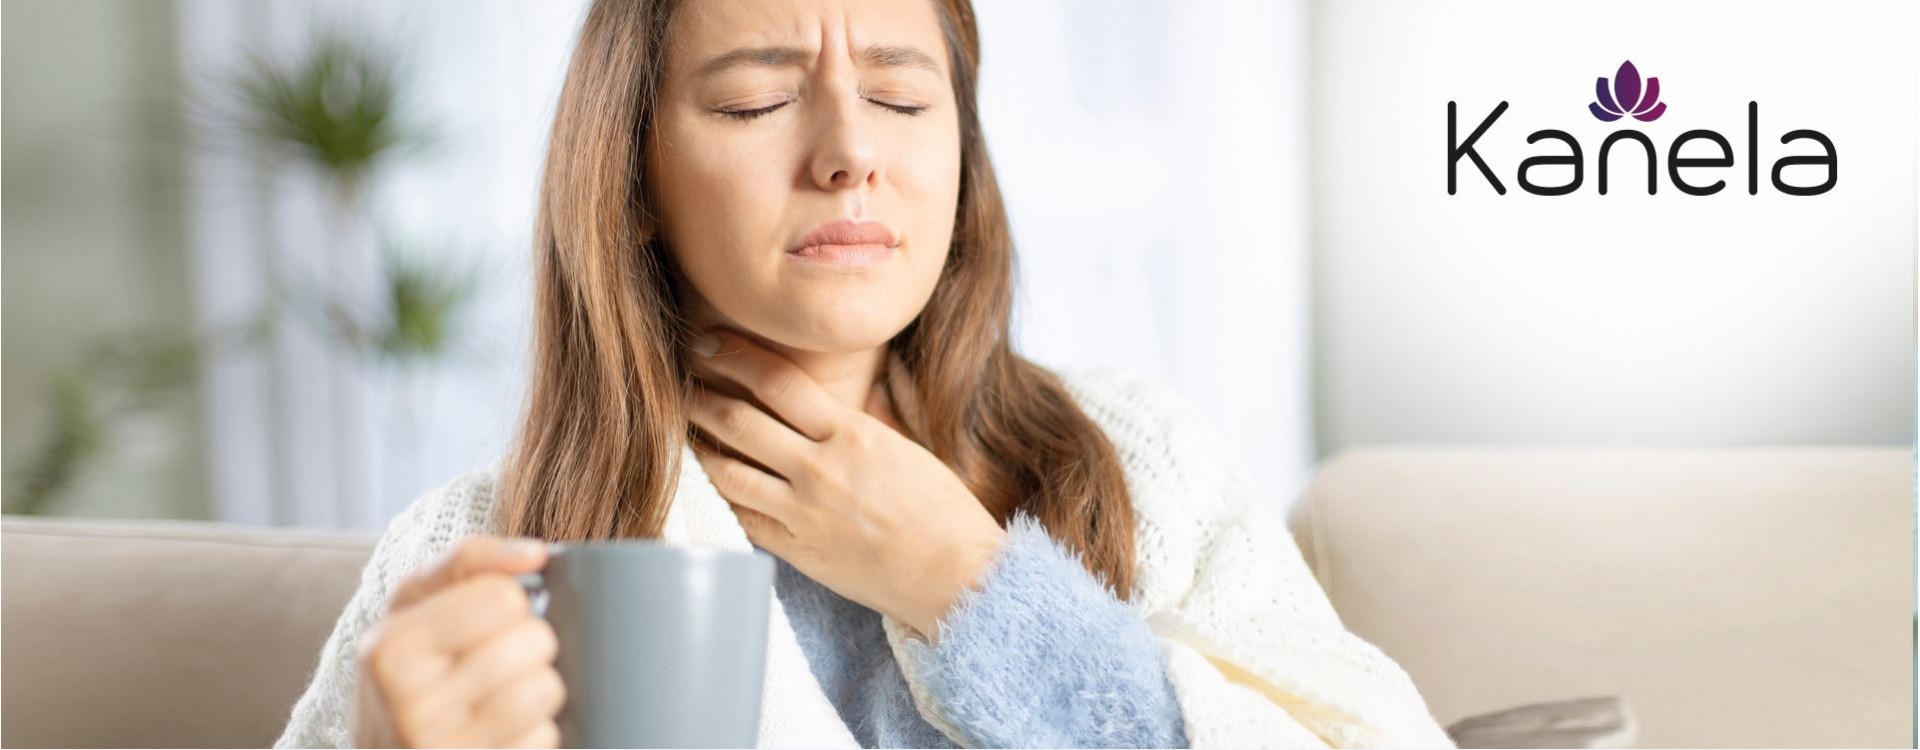 Cosa fare contro il mal di gola?